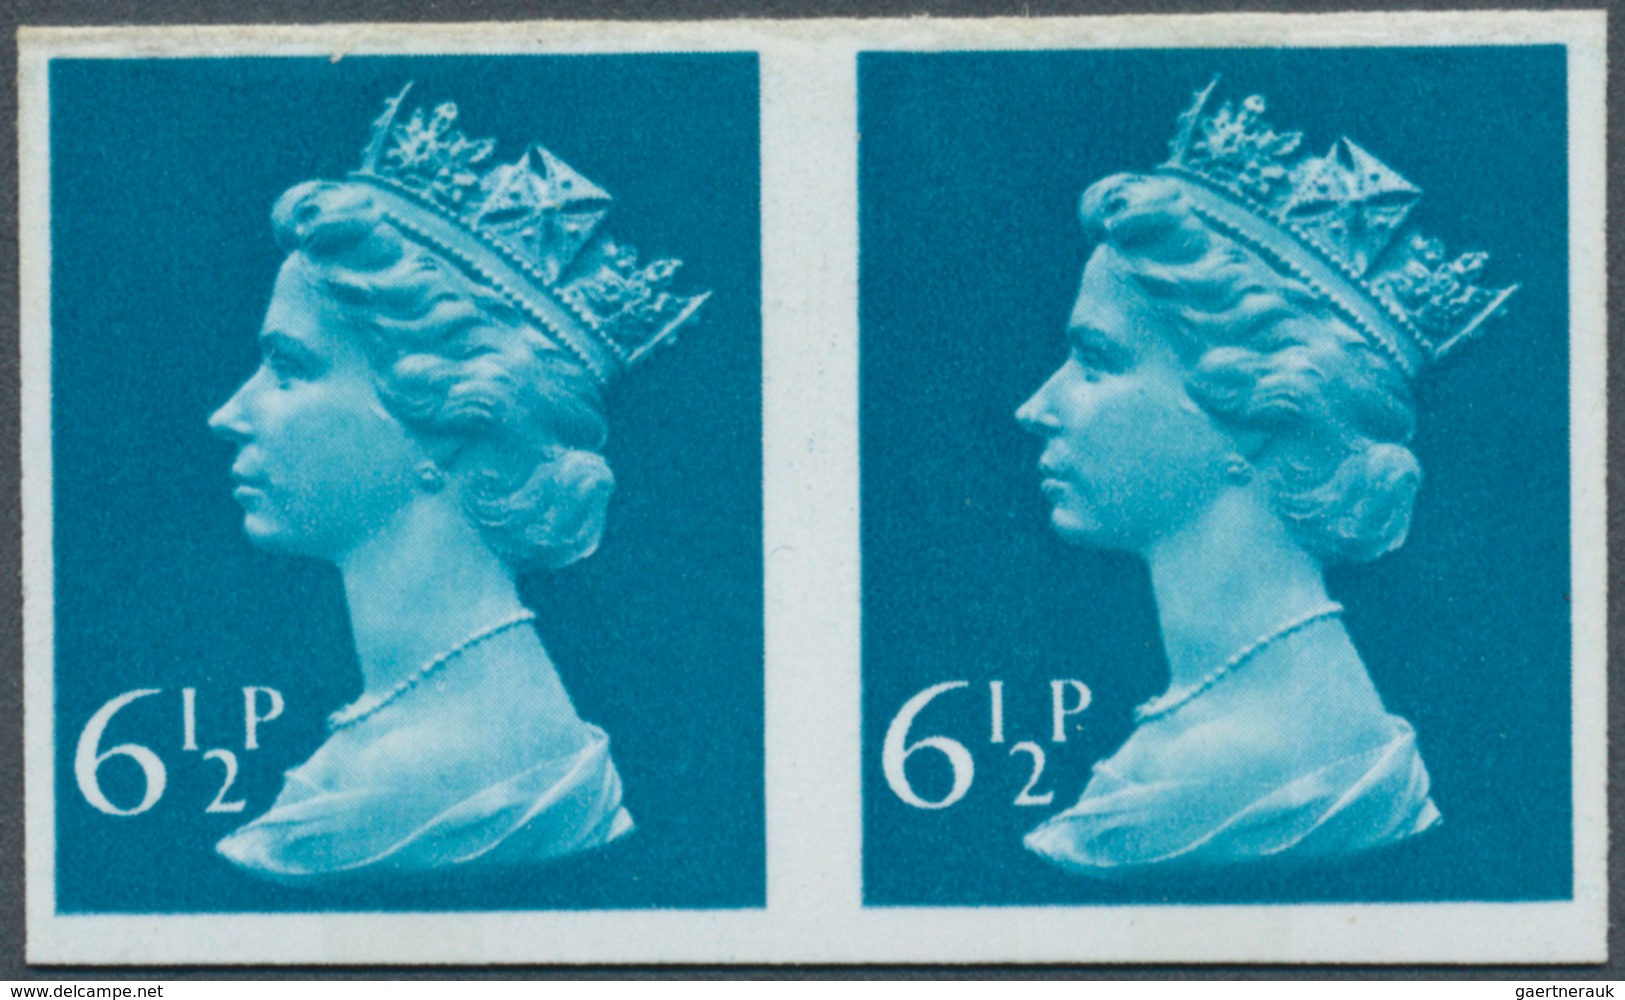 Großbritannien - Machin: 1975, 6½ P. Greenish Blue, Imperforated Horiz. Pair, Unmounted Mint. - Machins